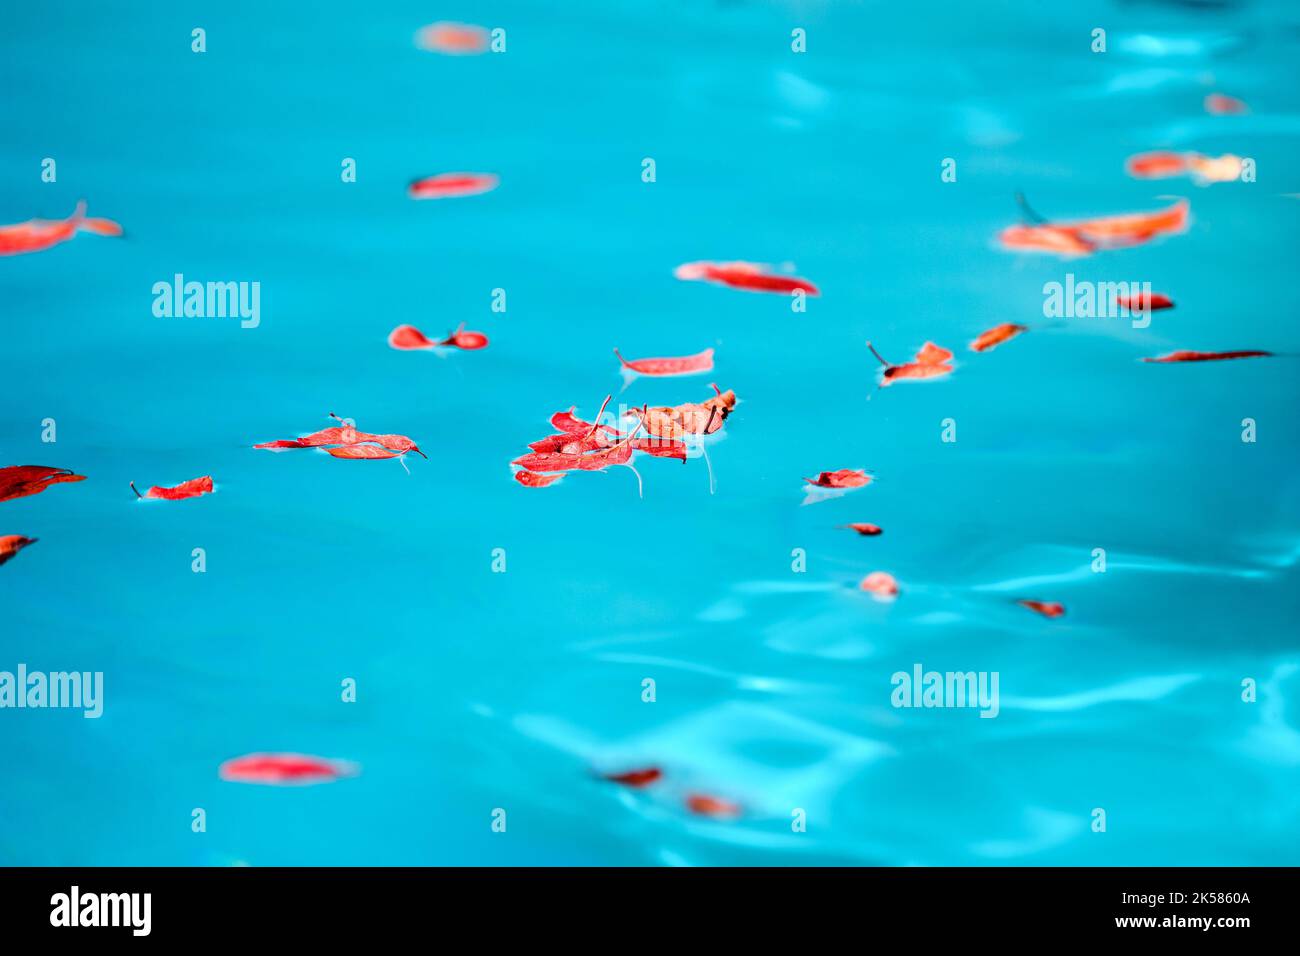 Hojas rojas flotando en la piscina Foto de stock